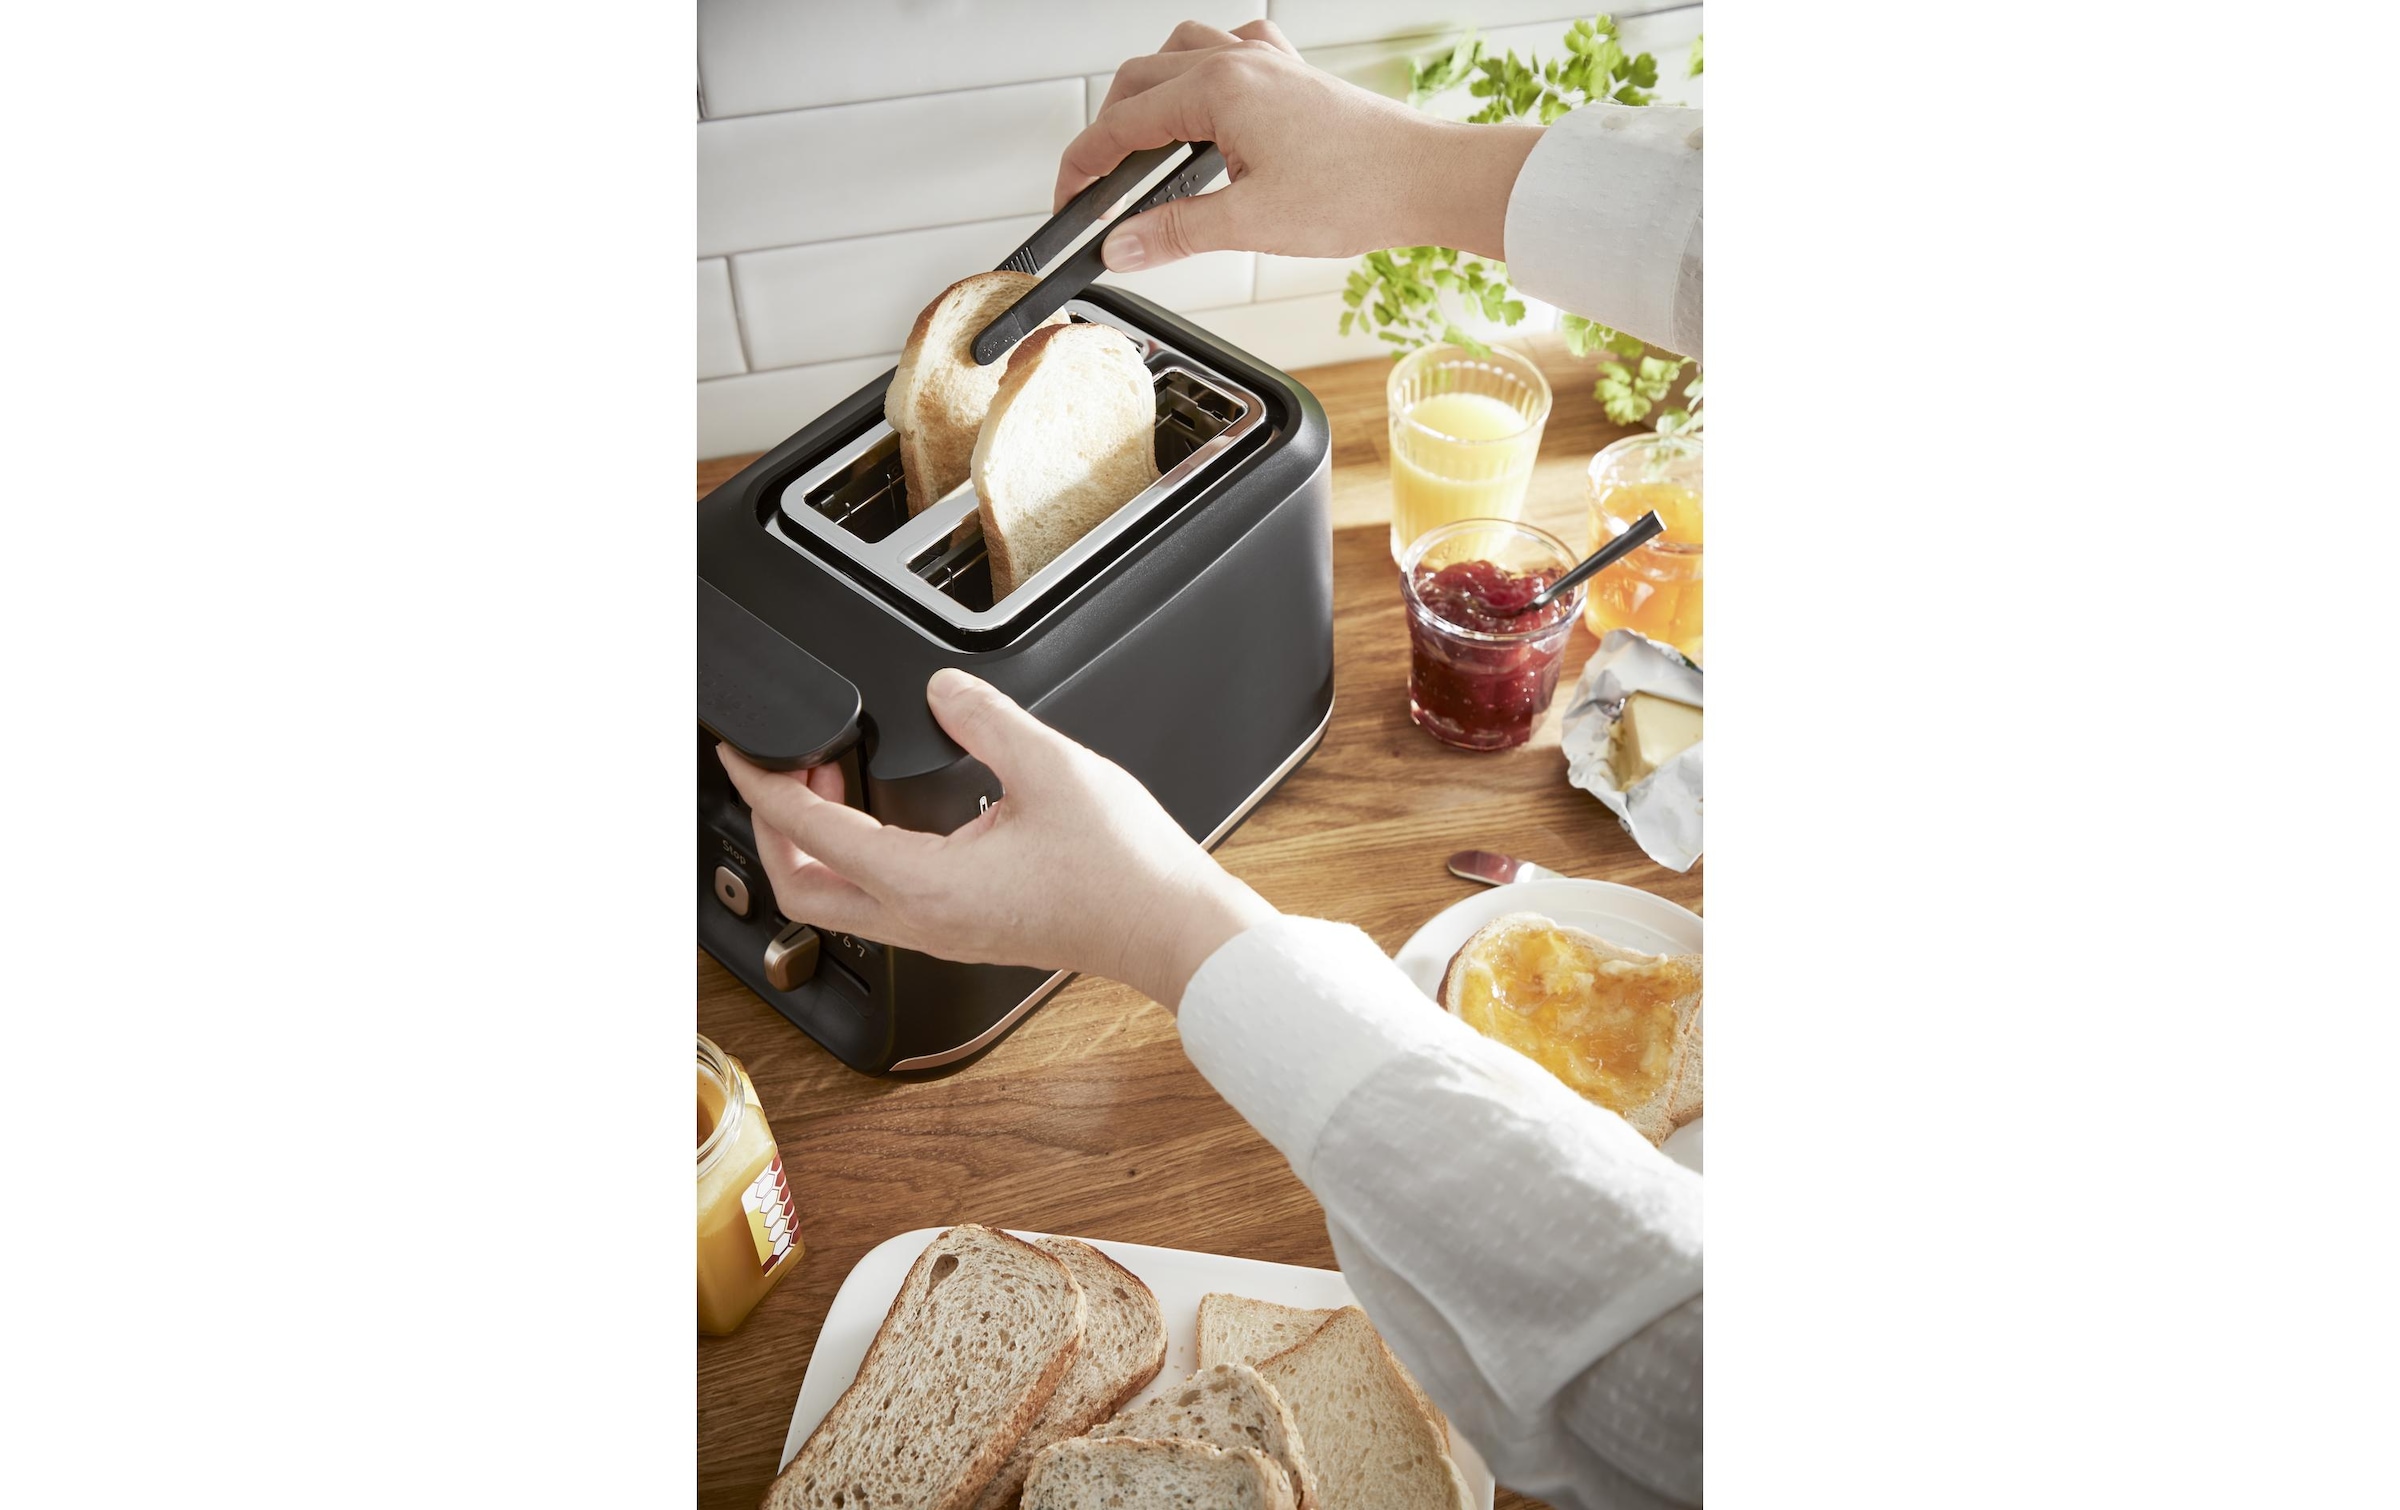 Tefal Toaster »Includeo Schwarz«, 850 W